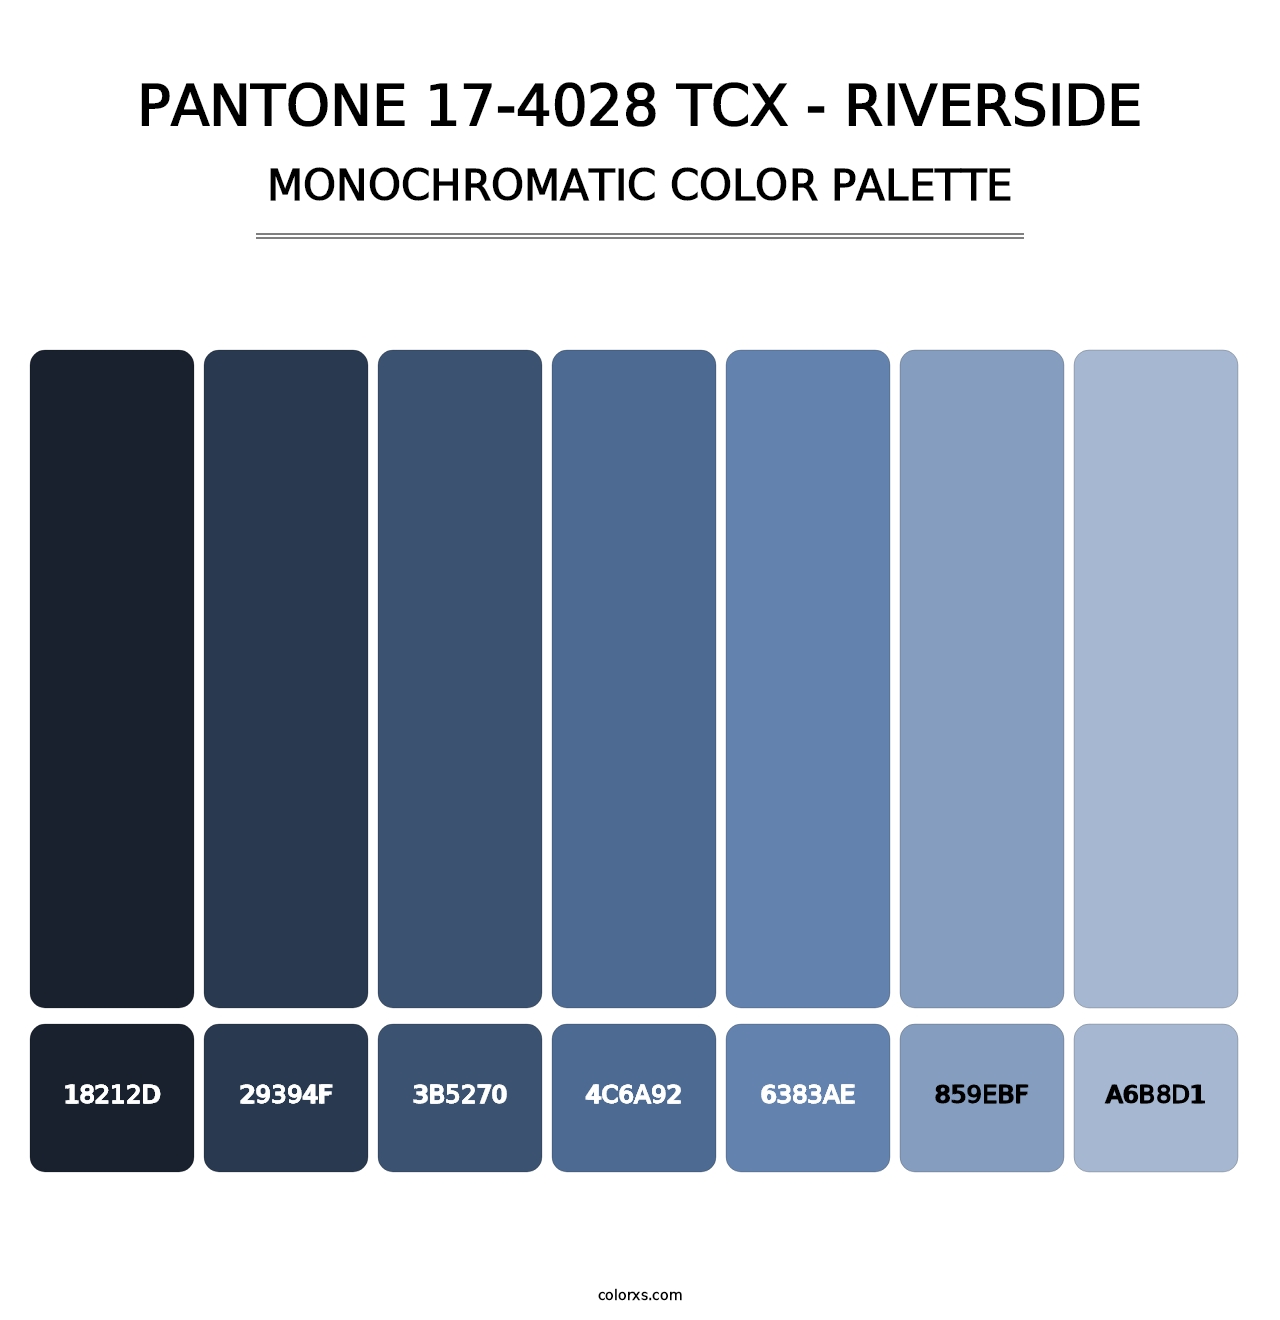 PANTONE 17-4028 TCX - Riverside - Monochromatic Color Palette